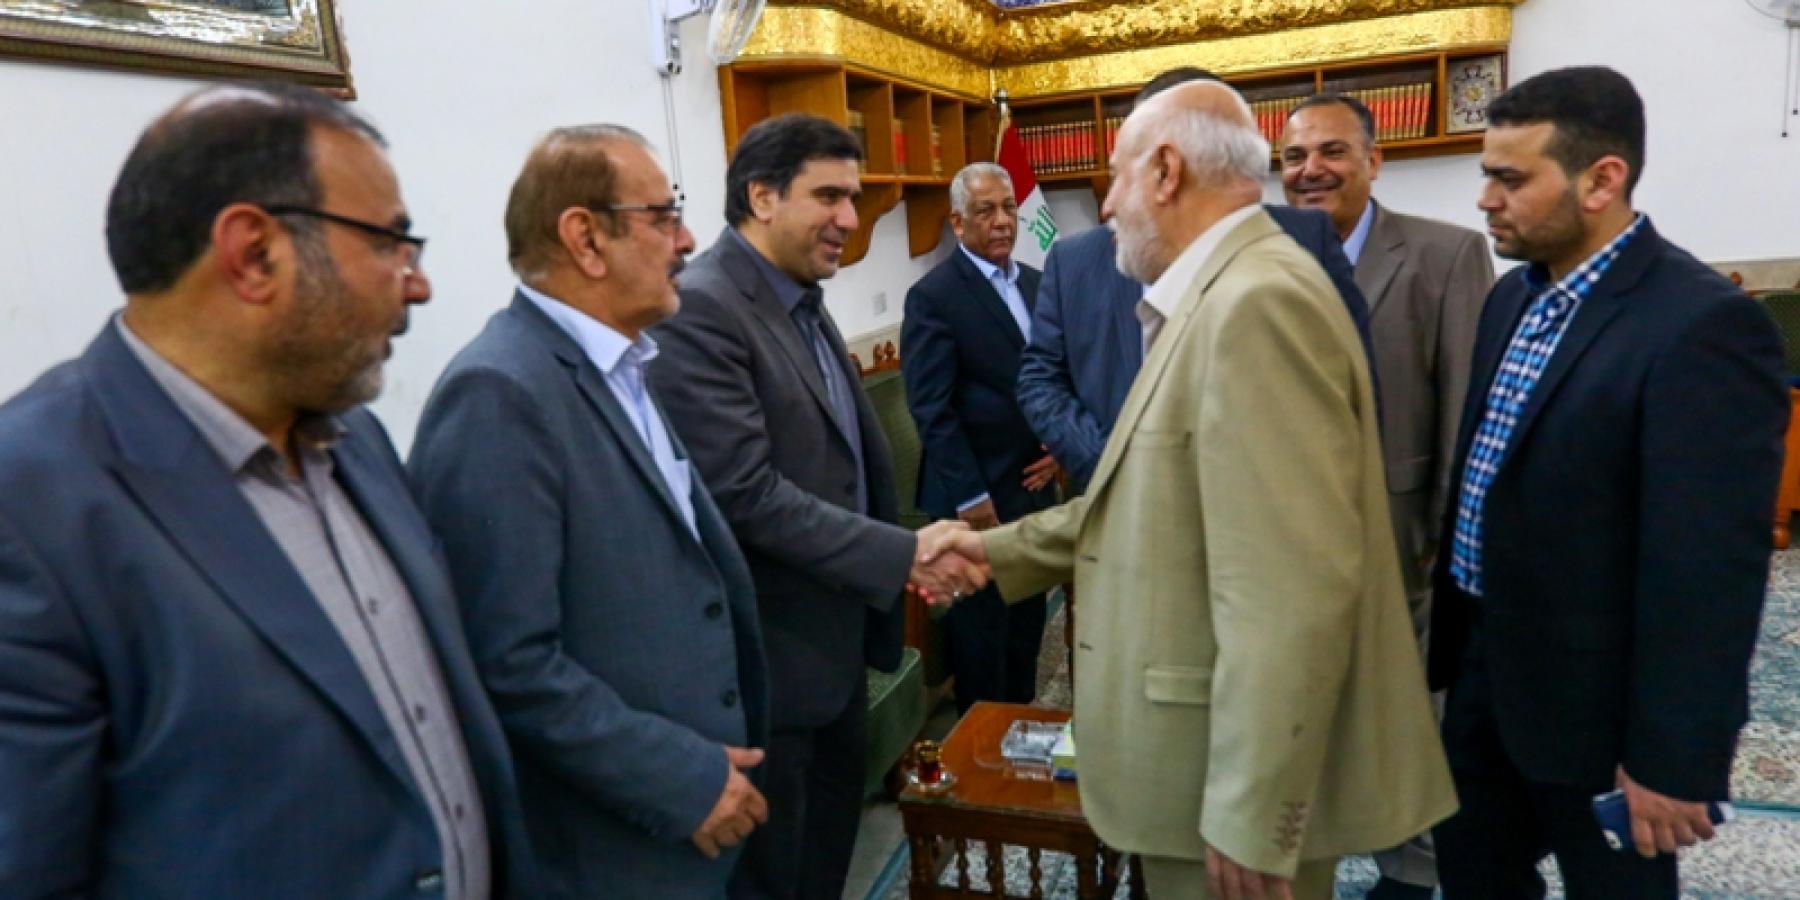 وفد إعلامي من الجمهورية الإسلامية الإيرانية يتشرف بزيارة مرقد الإمام علي (عليه السلام)